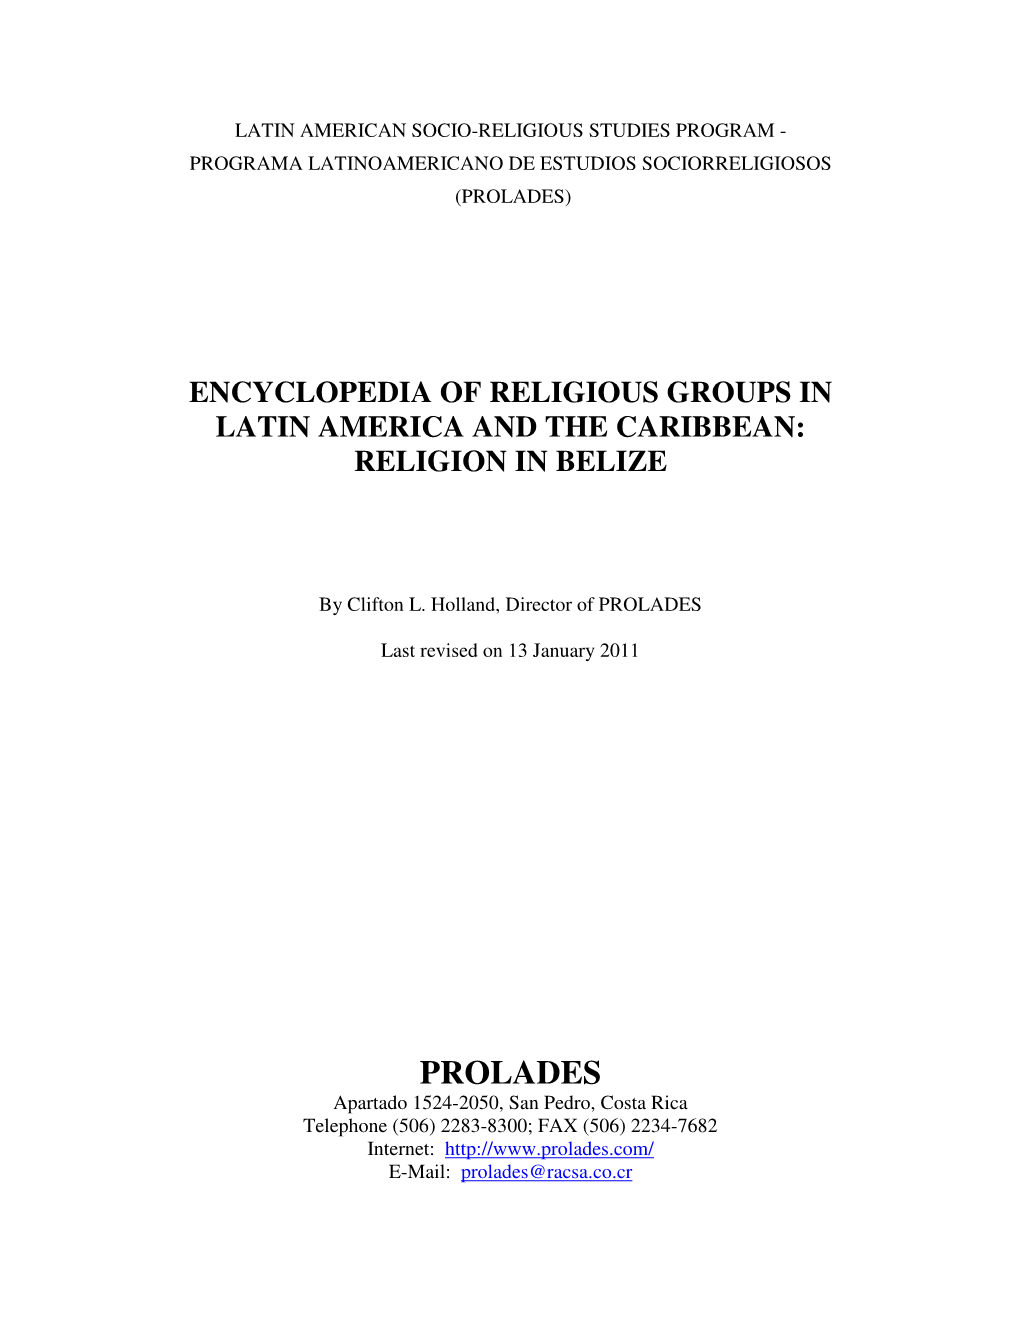 Religion in Belize